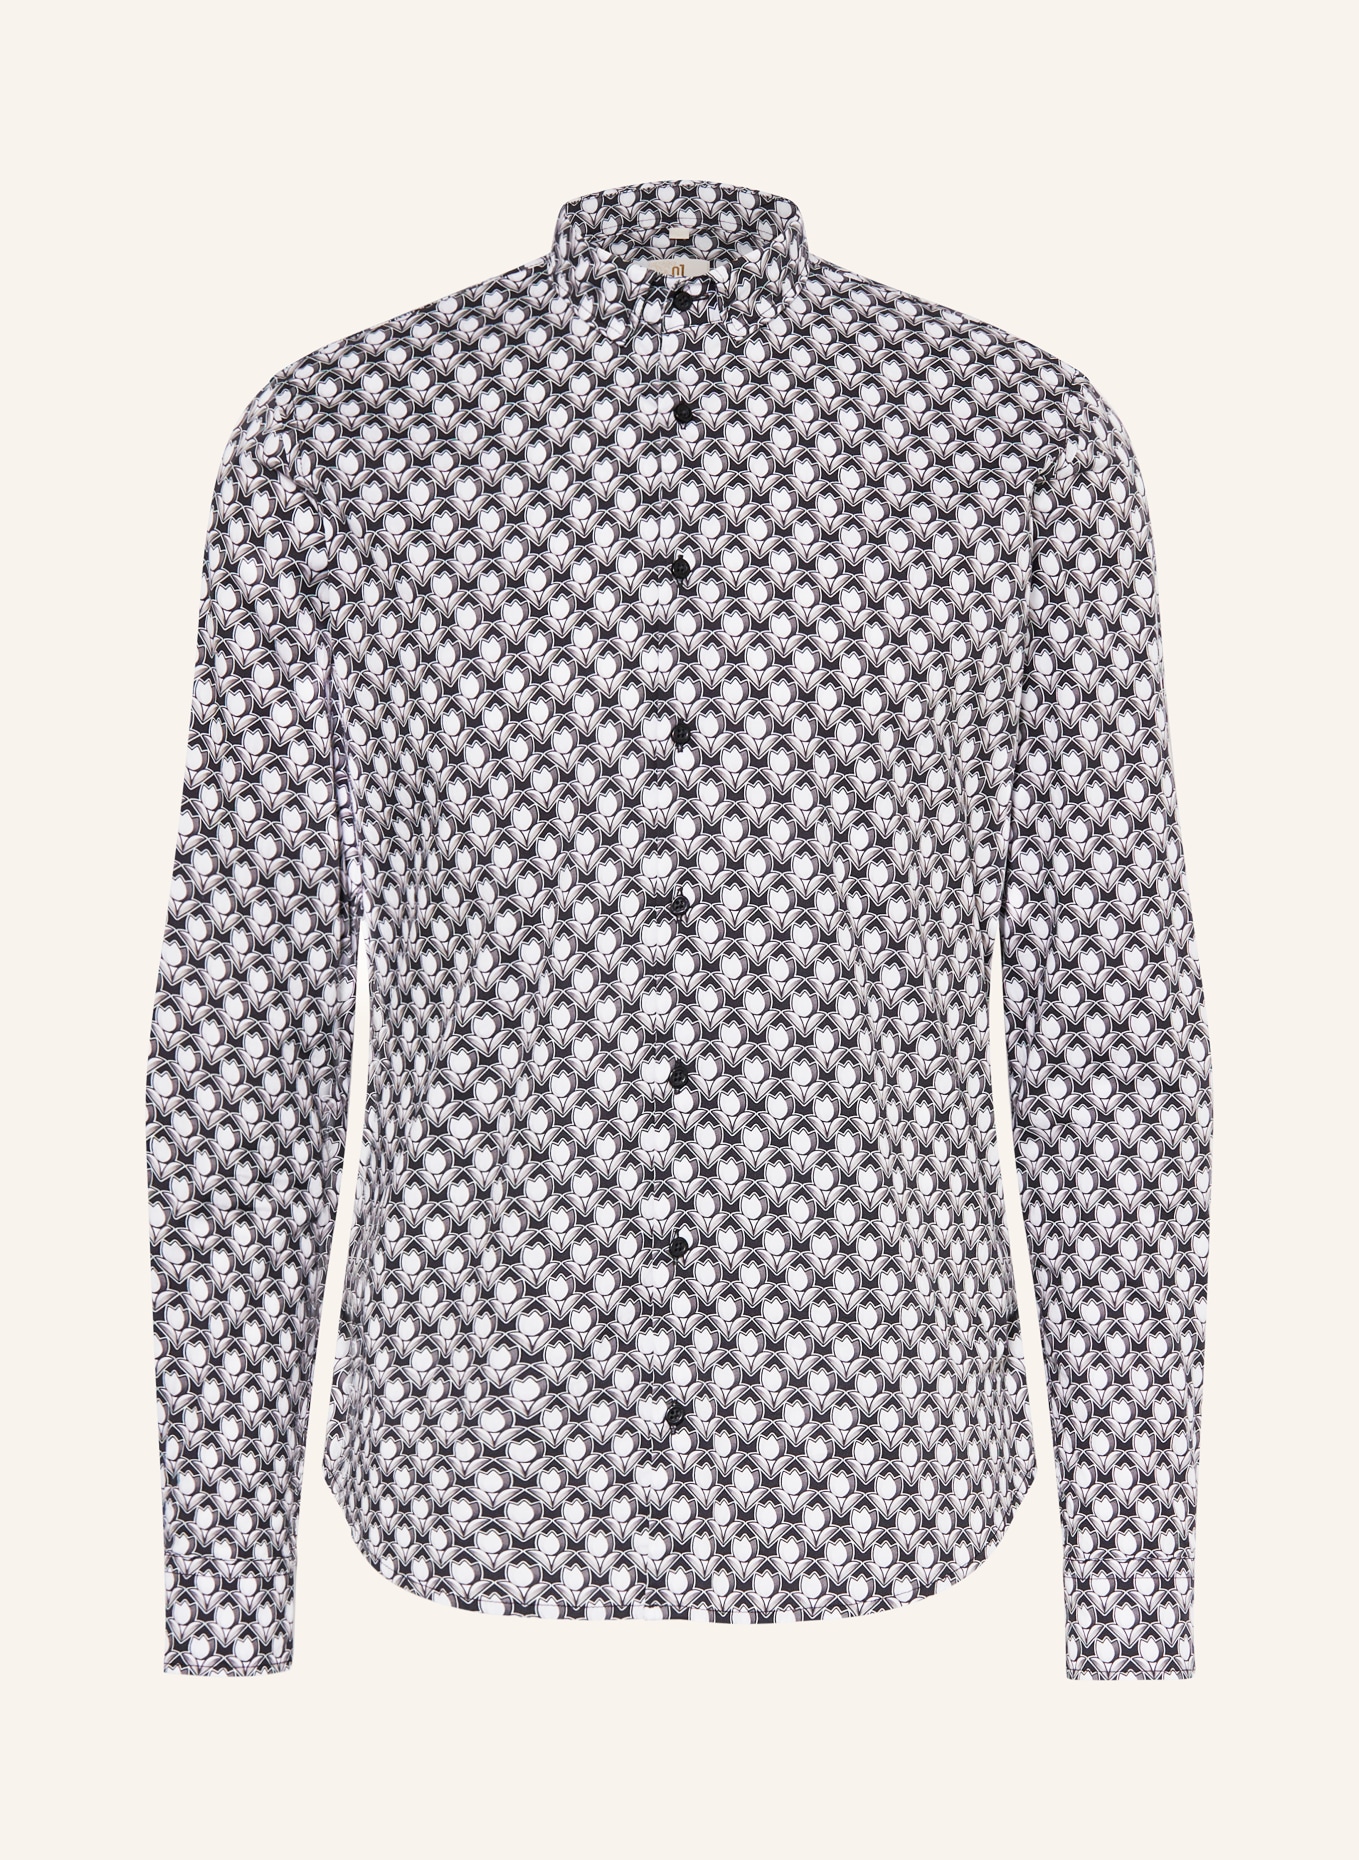 Q1 Manufaktur Shirt premium fit, Color: BLACK/ WHITE/ GRAY (Image 1)